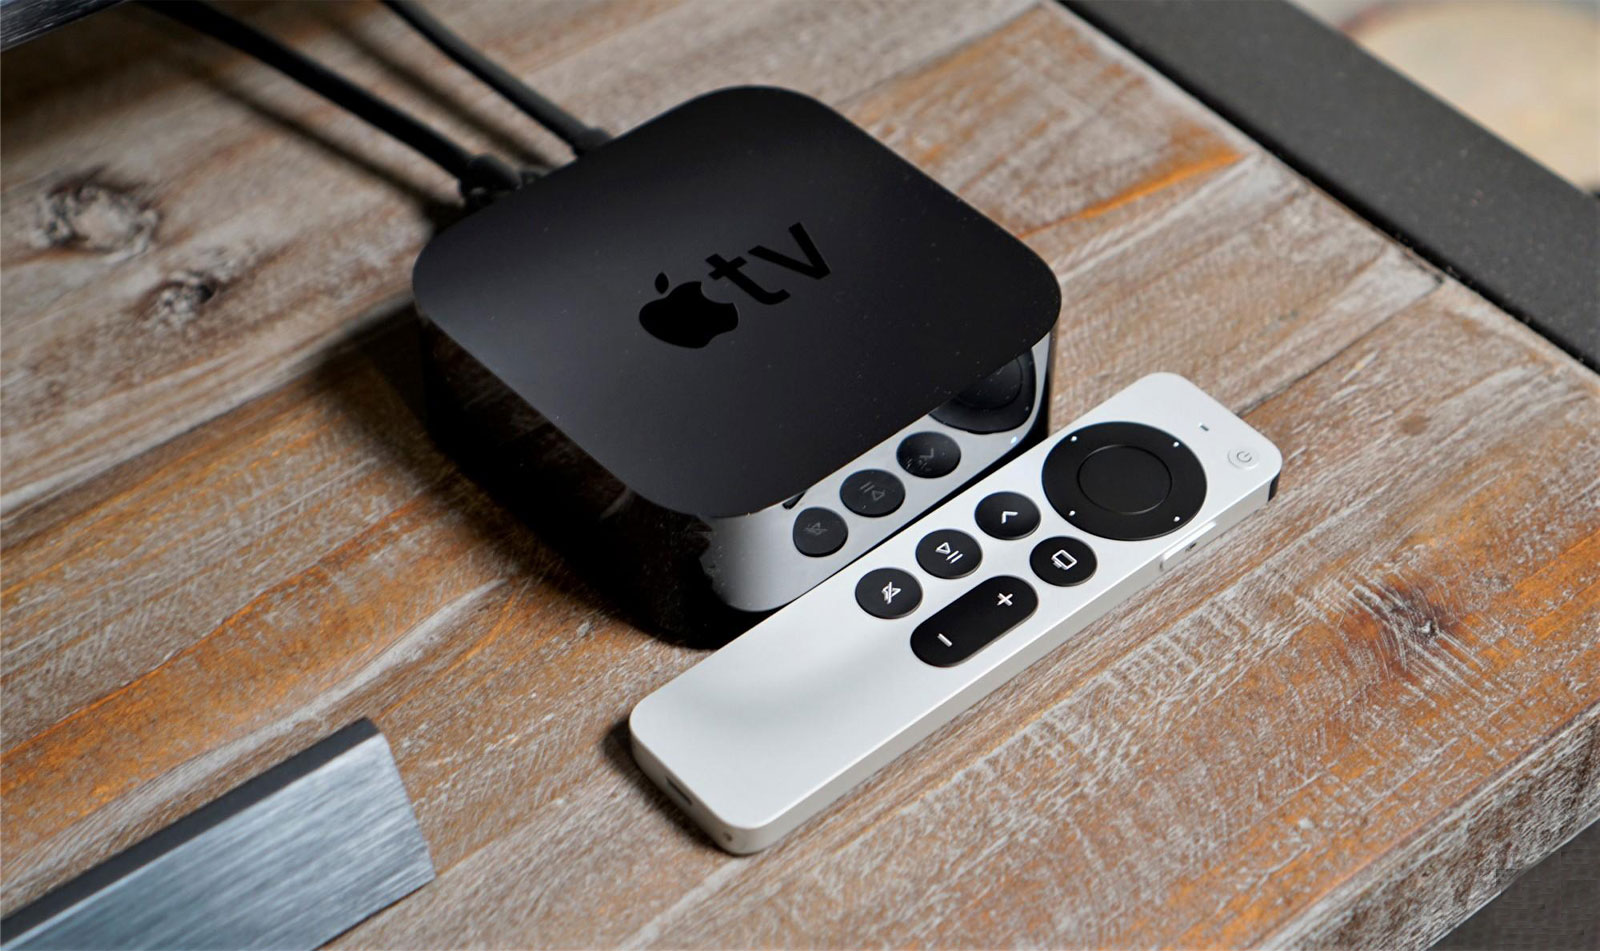 Multimediálna stanica Apple TV 4K obsahuje funkcie, ktoré vychádzajú v ústrety ľuďom so špecifickým zrakovým, sluchovým, motorickým či študijným obmedzením.